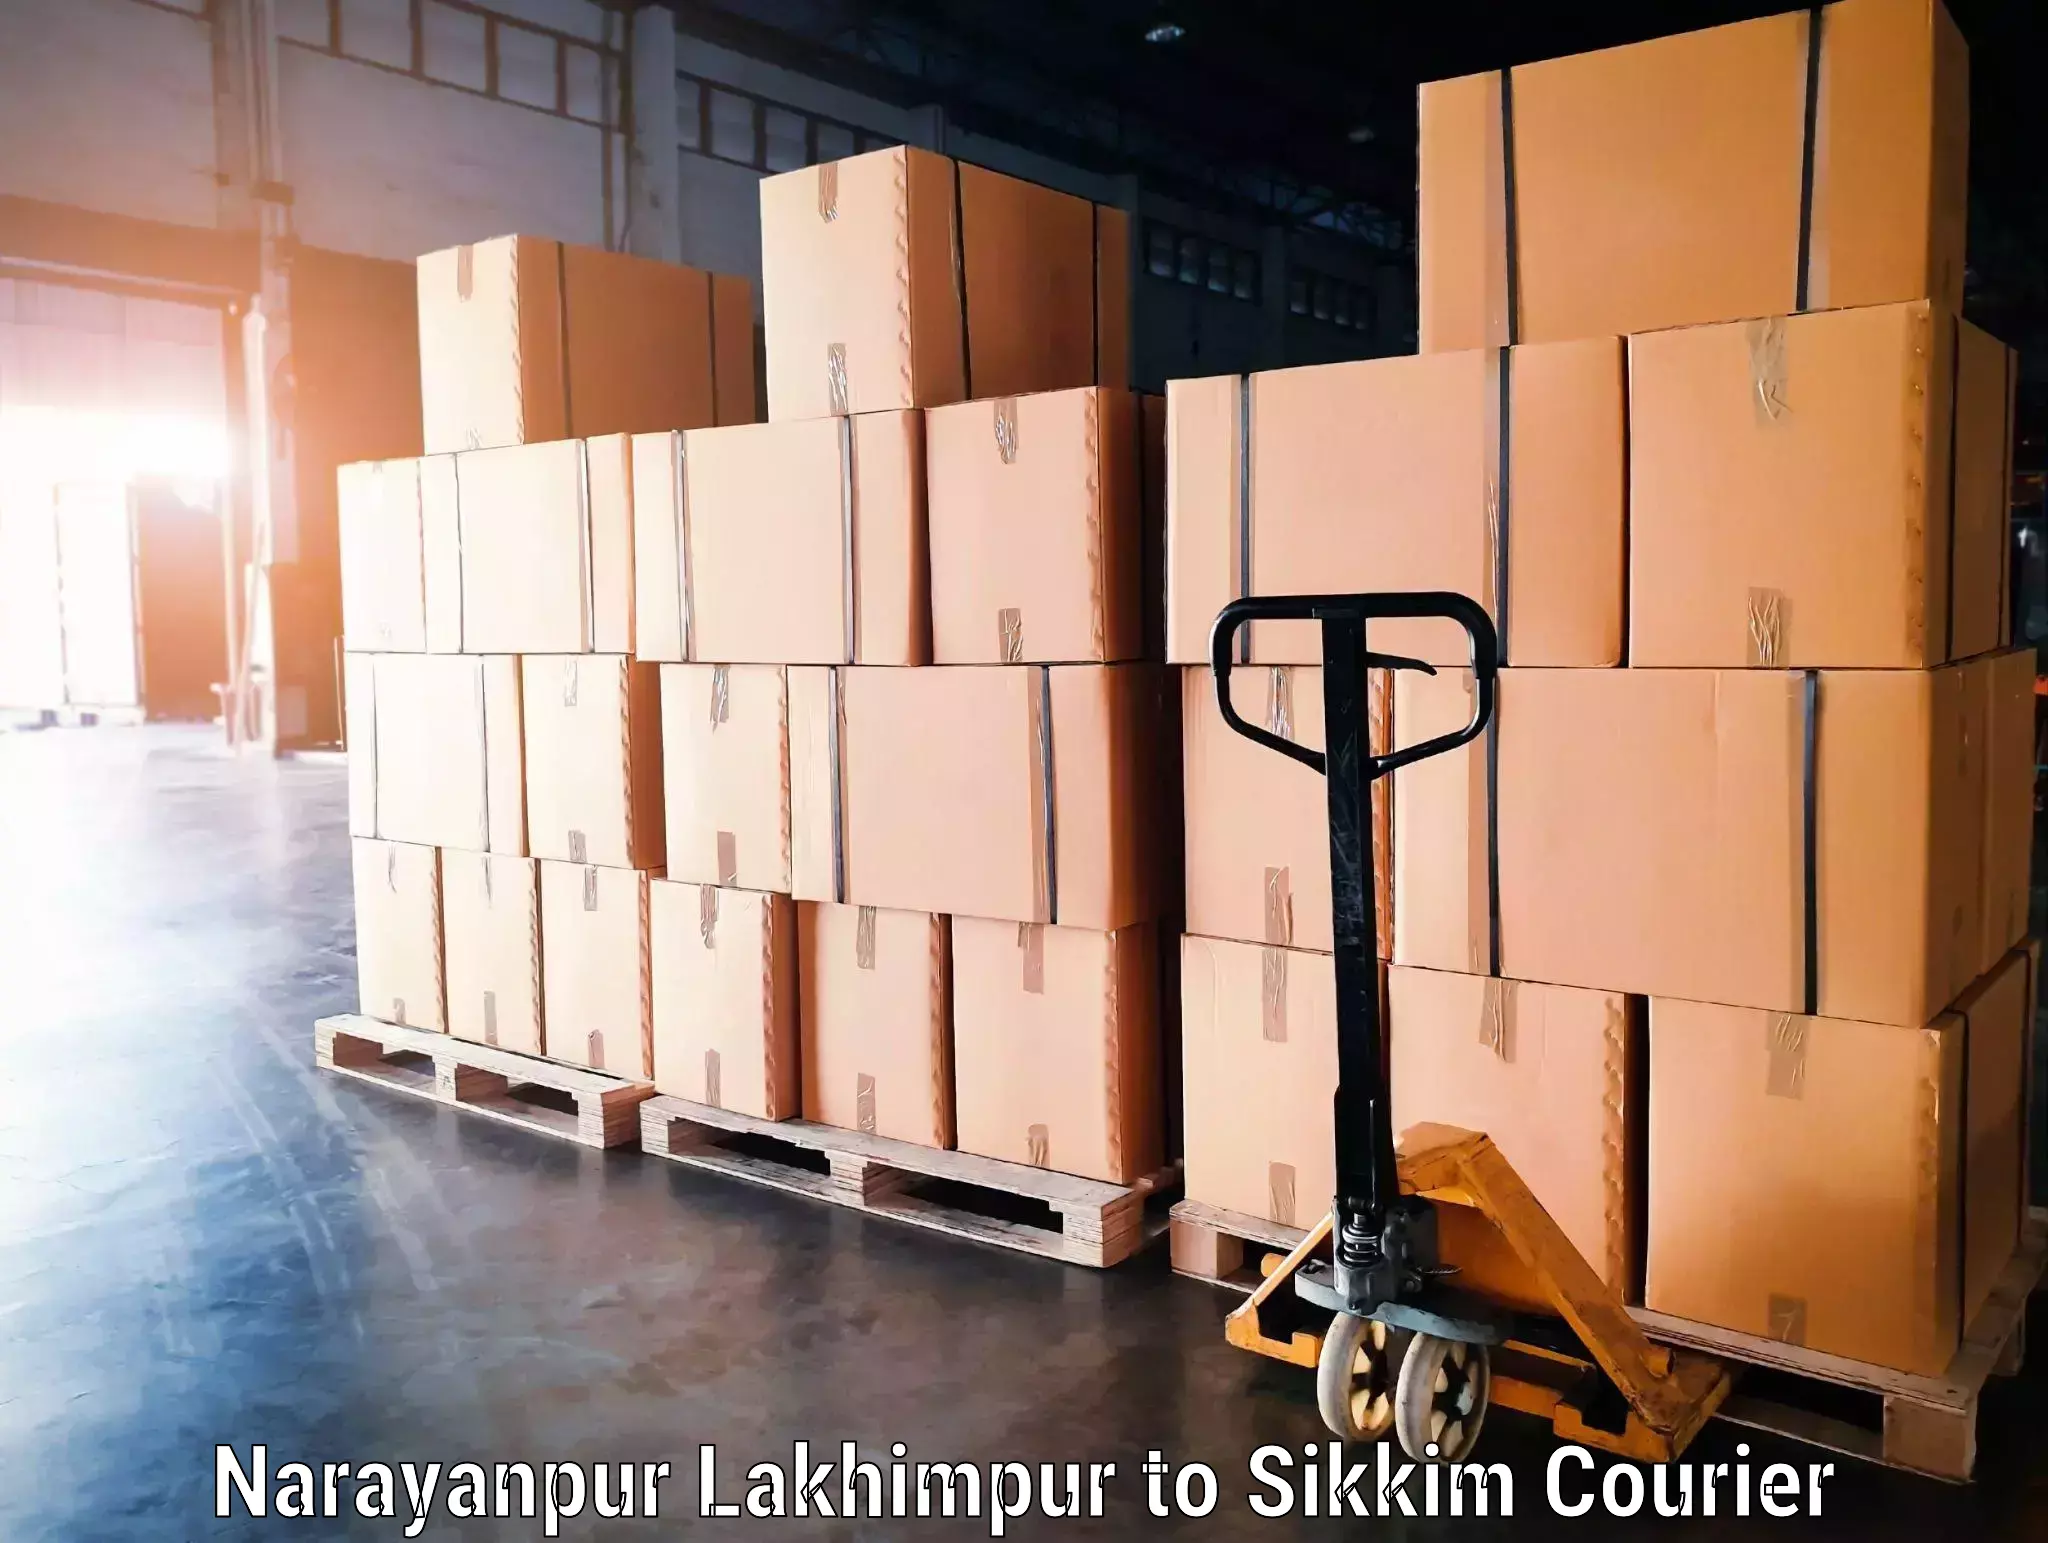 Baggage transport logistics Narayanpur Lakhimpur to Jorethang